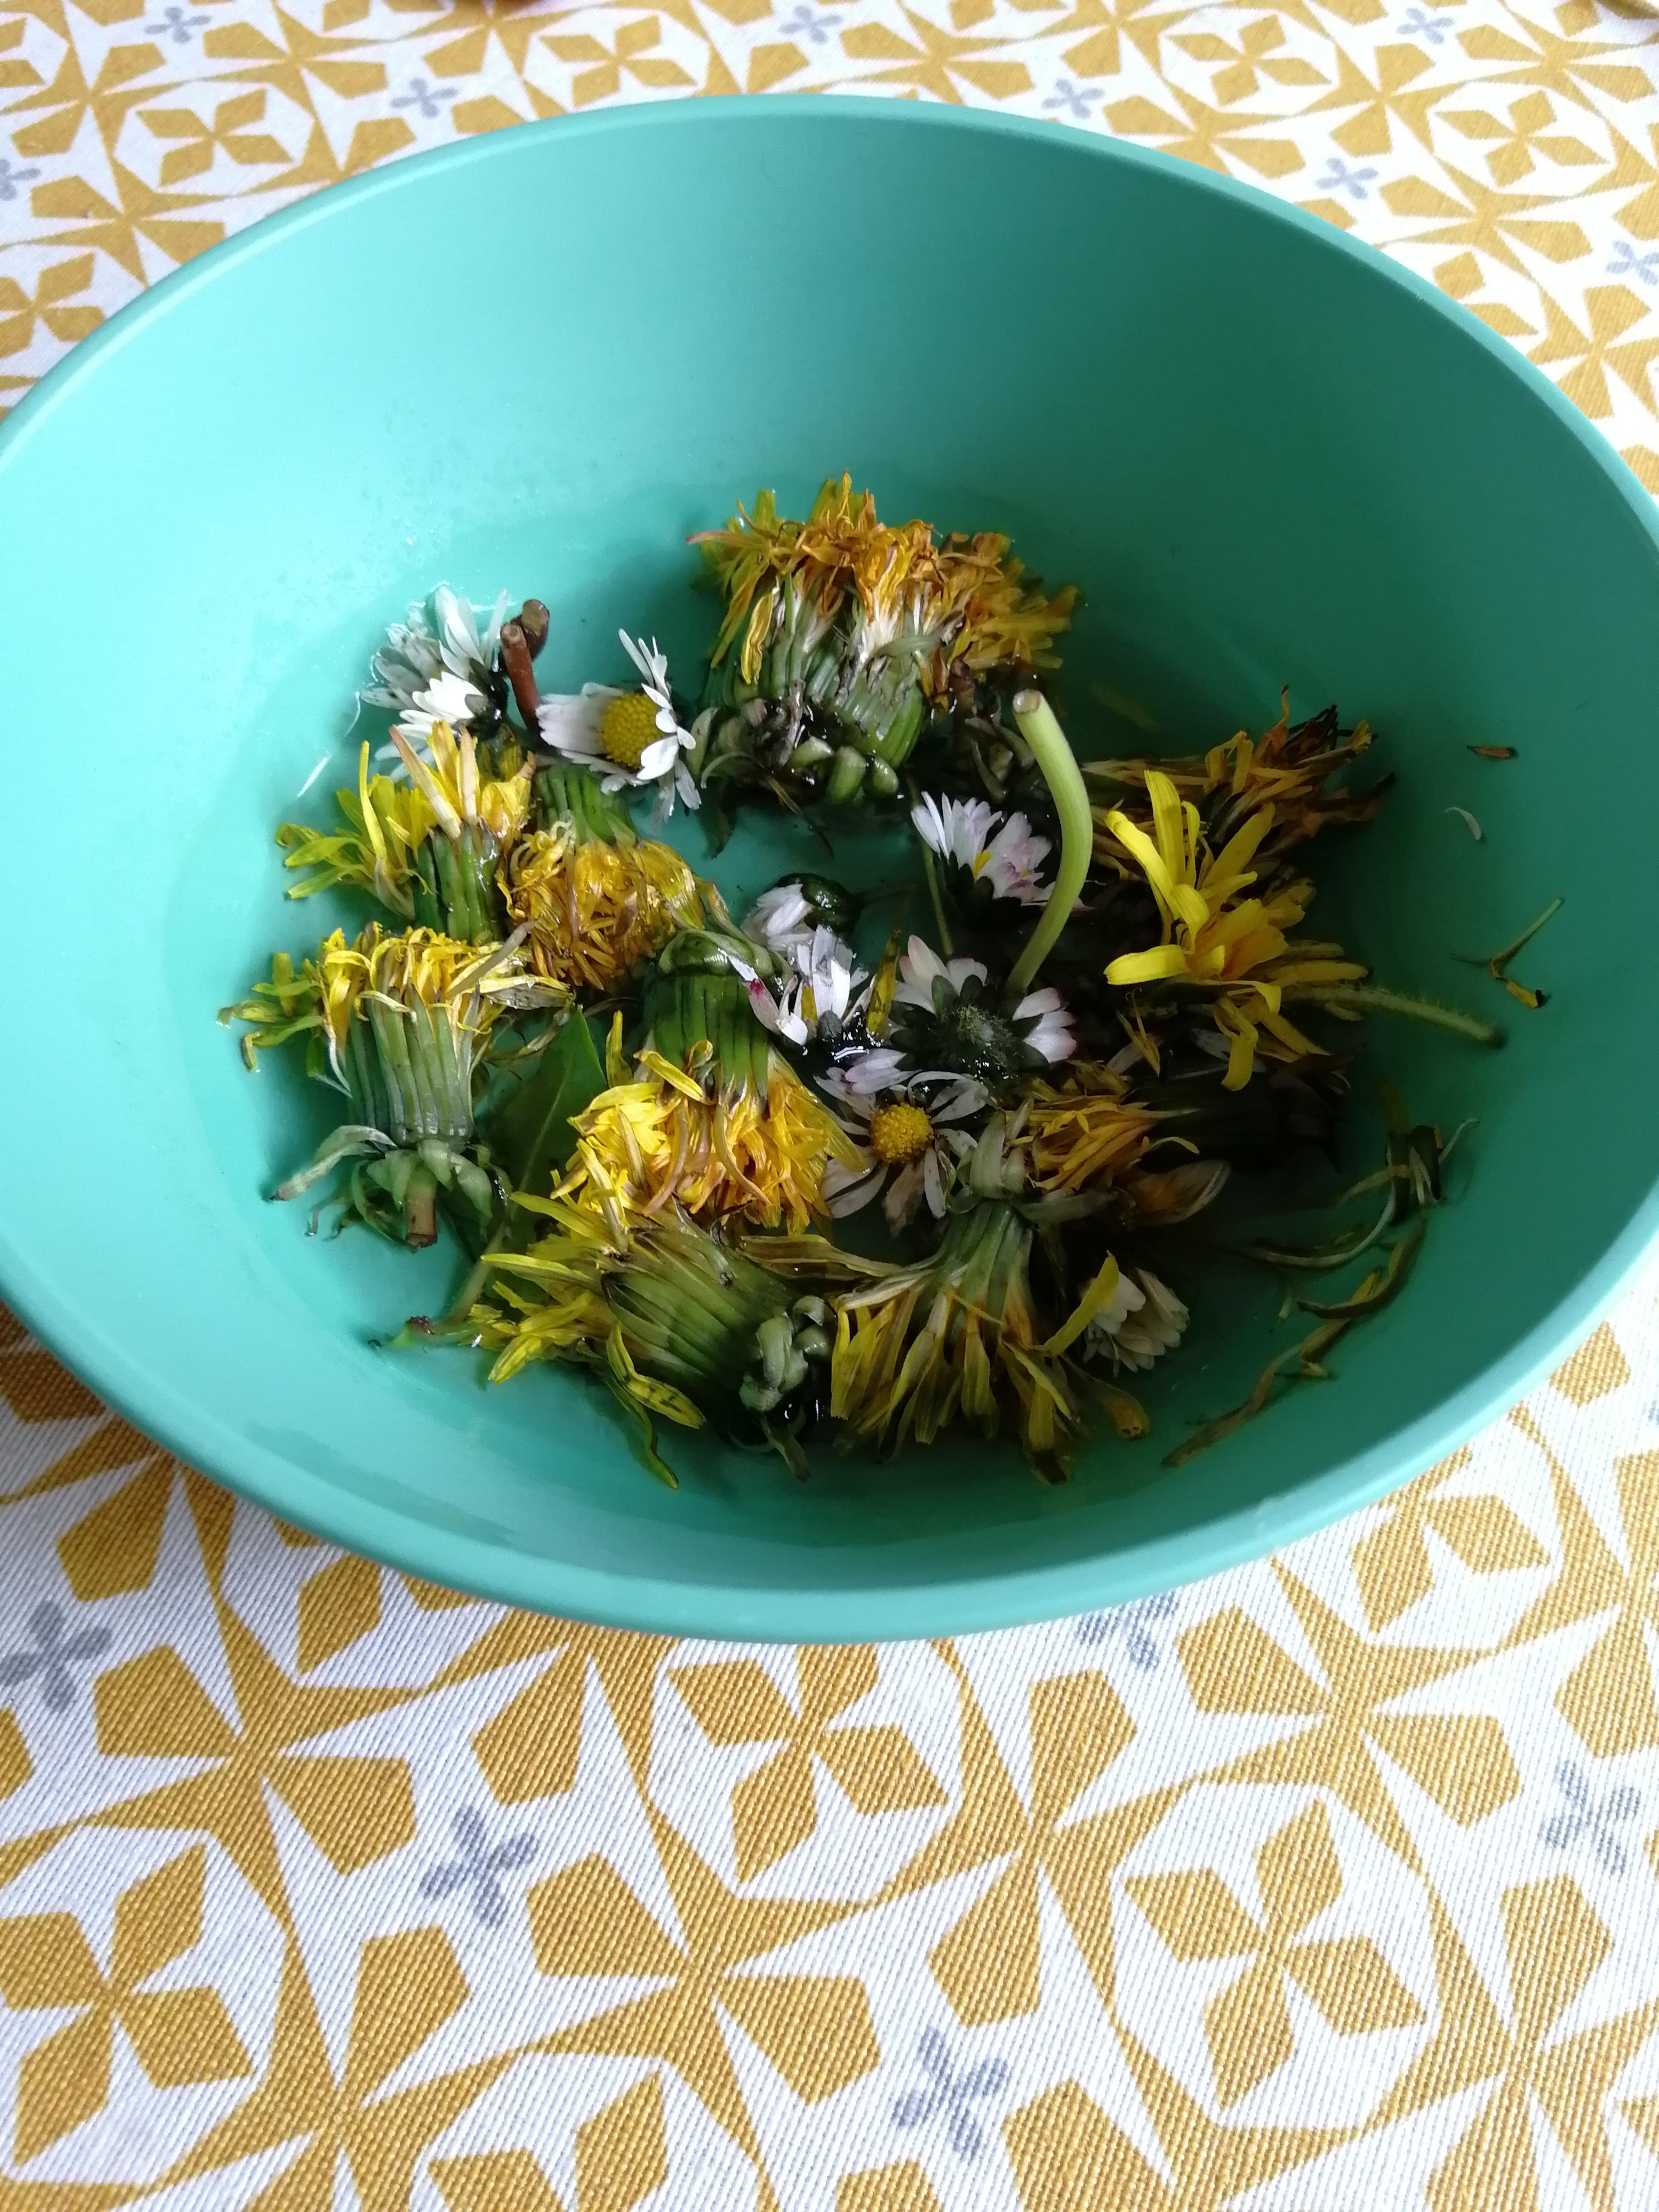 Wenn Kleinkinder Blumensträuße pflücken😂... Allen Muddis einen schönen #muttertag! #blumendeko #freshflowerfriday 